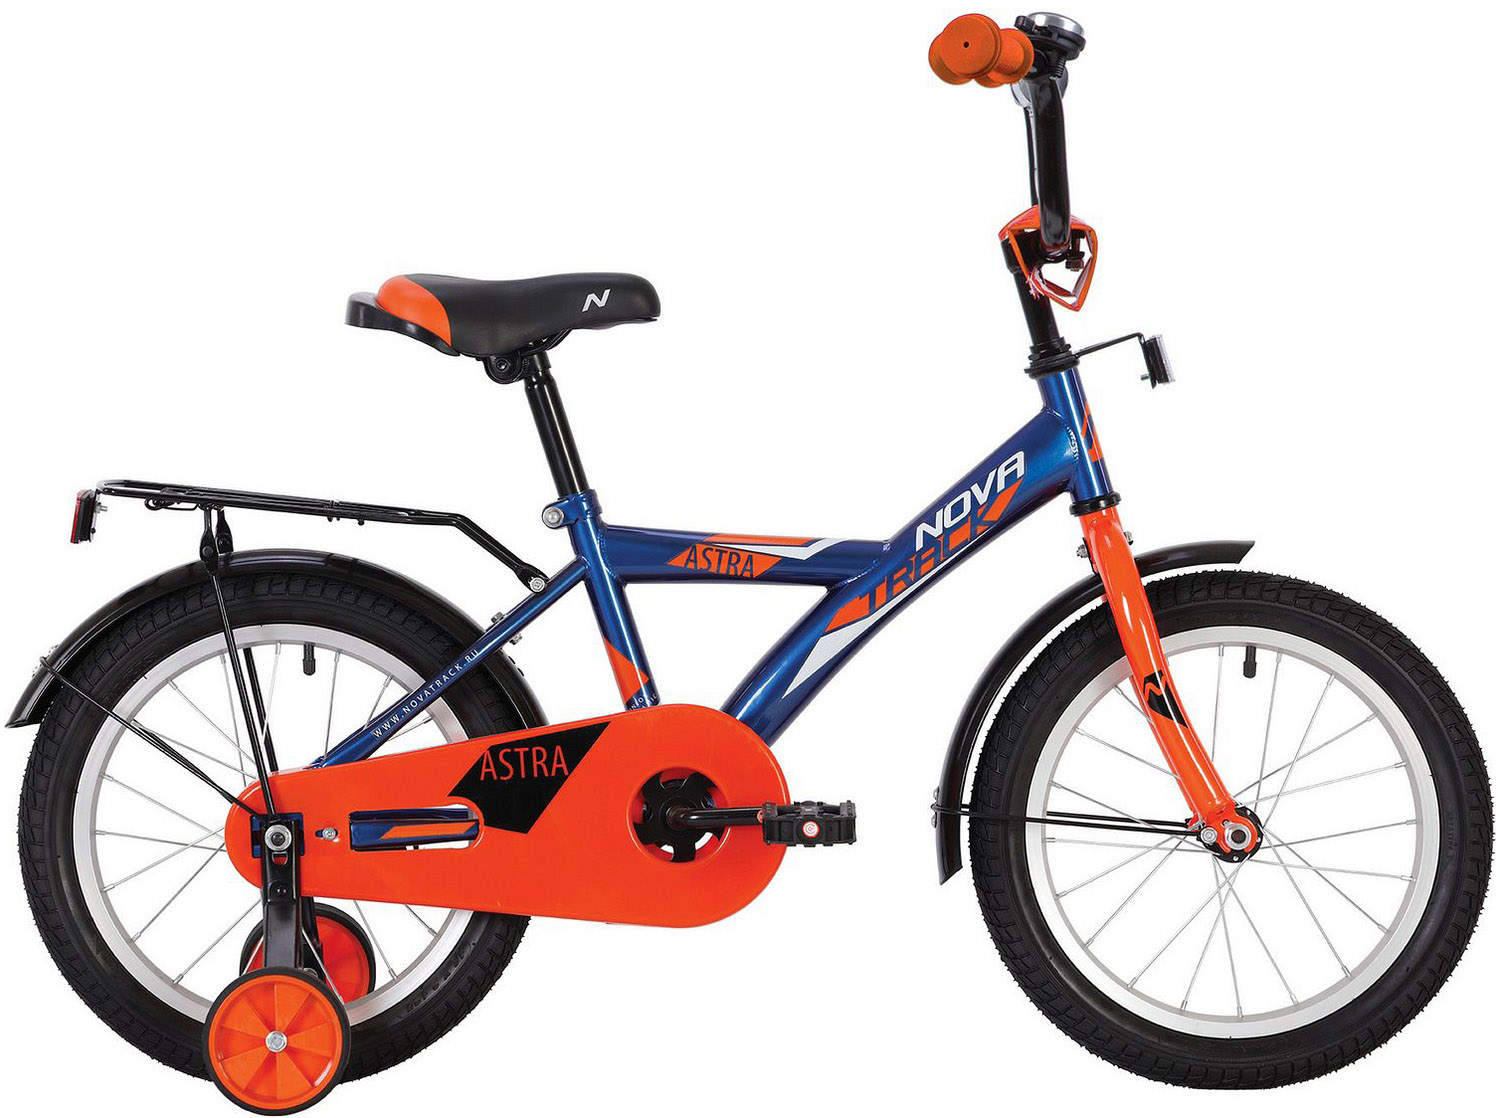  Отзывы о Детском велосипеде Novatrack Astra 12 2020